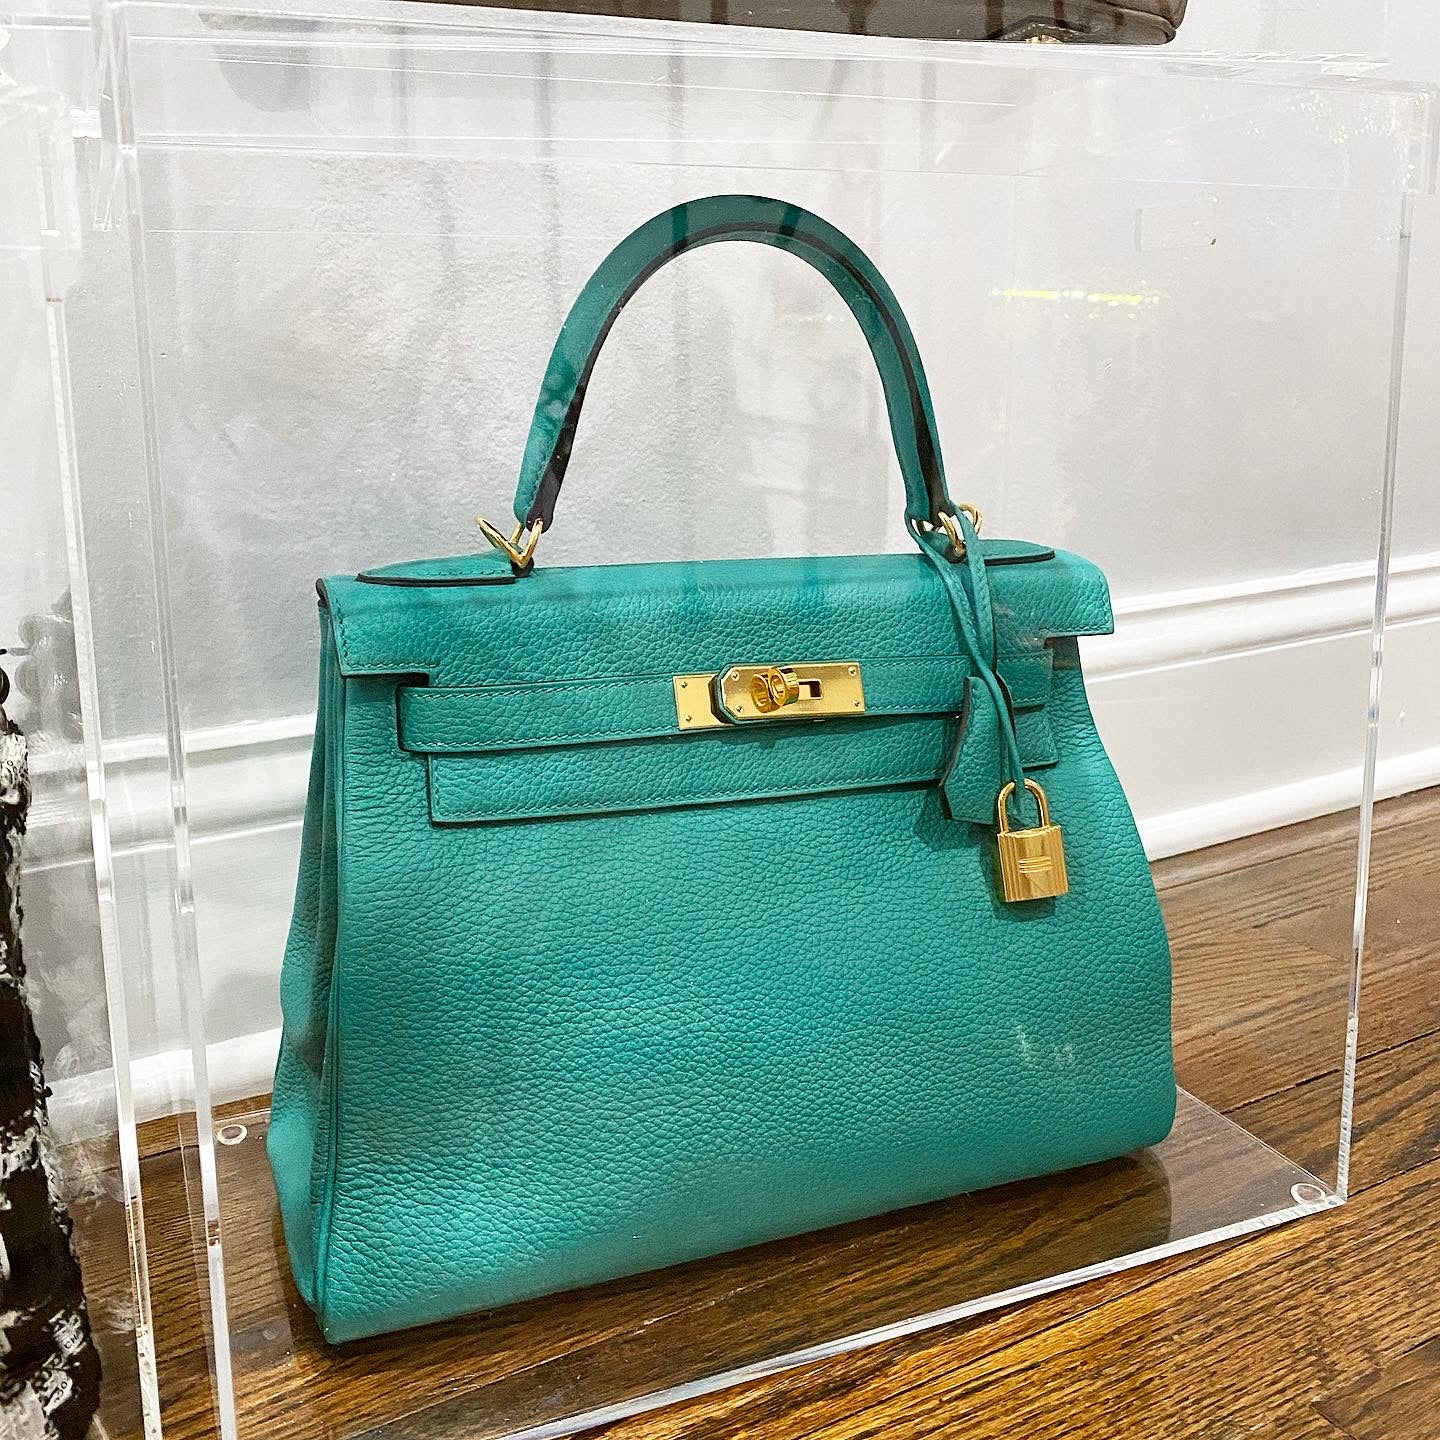 Designer Handbag Storage Case Made for Hermes Birkin